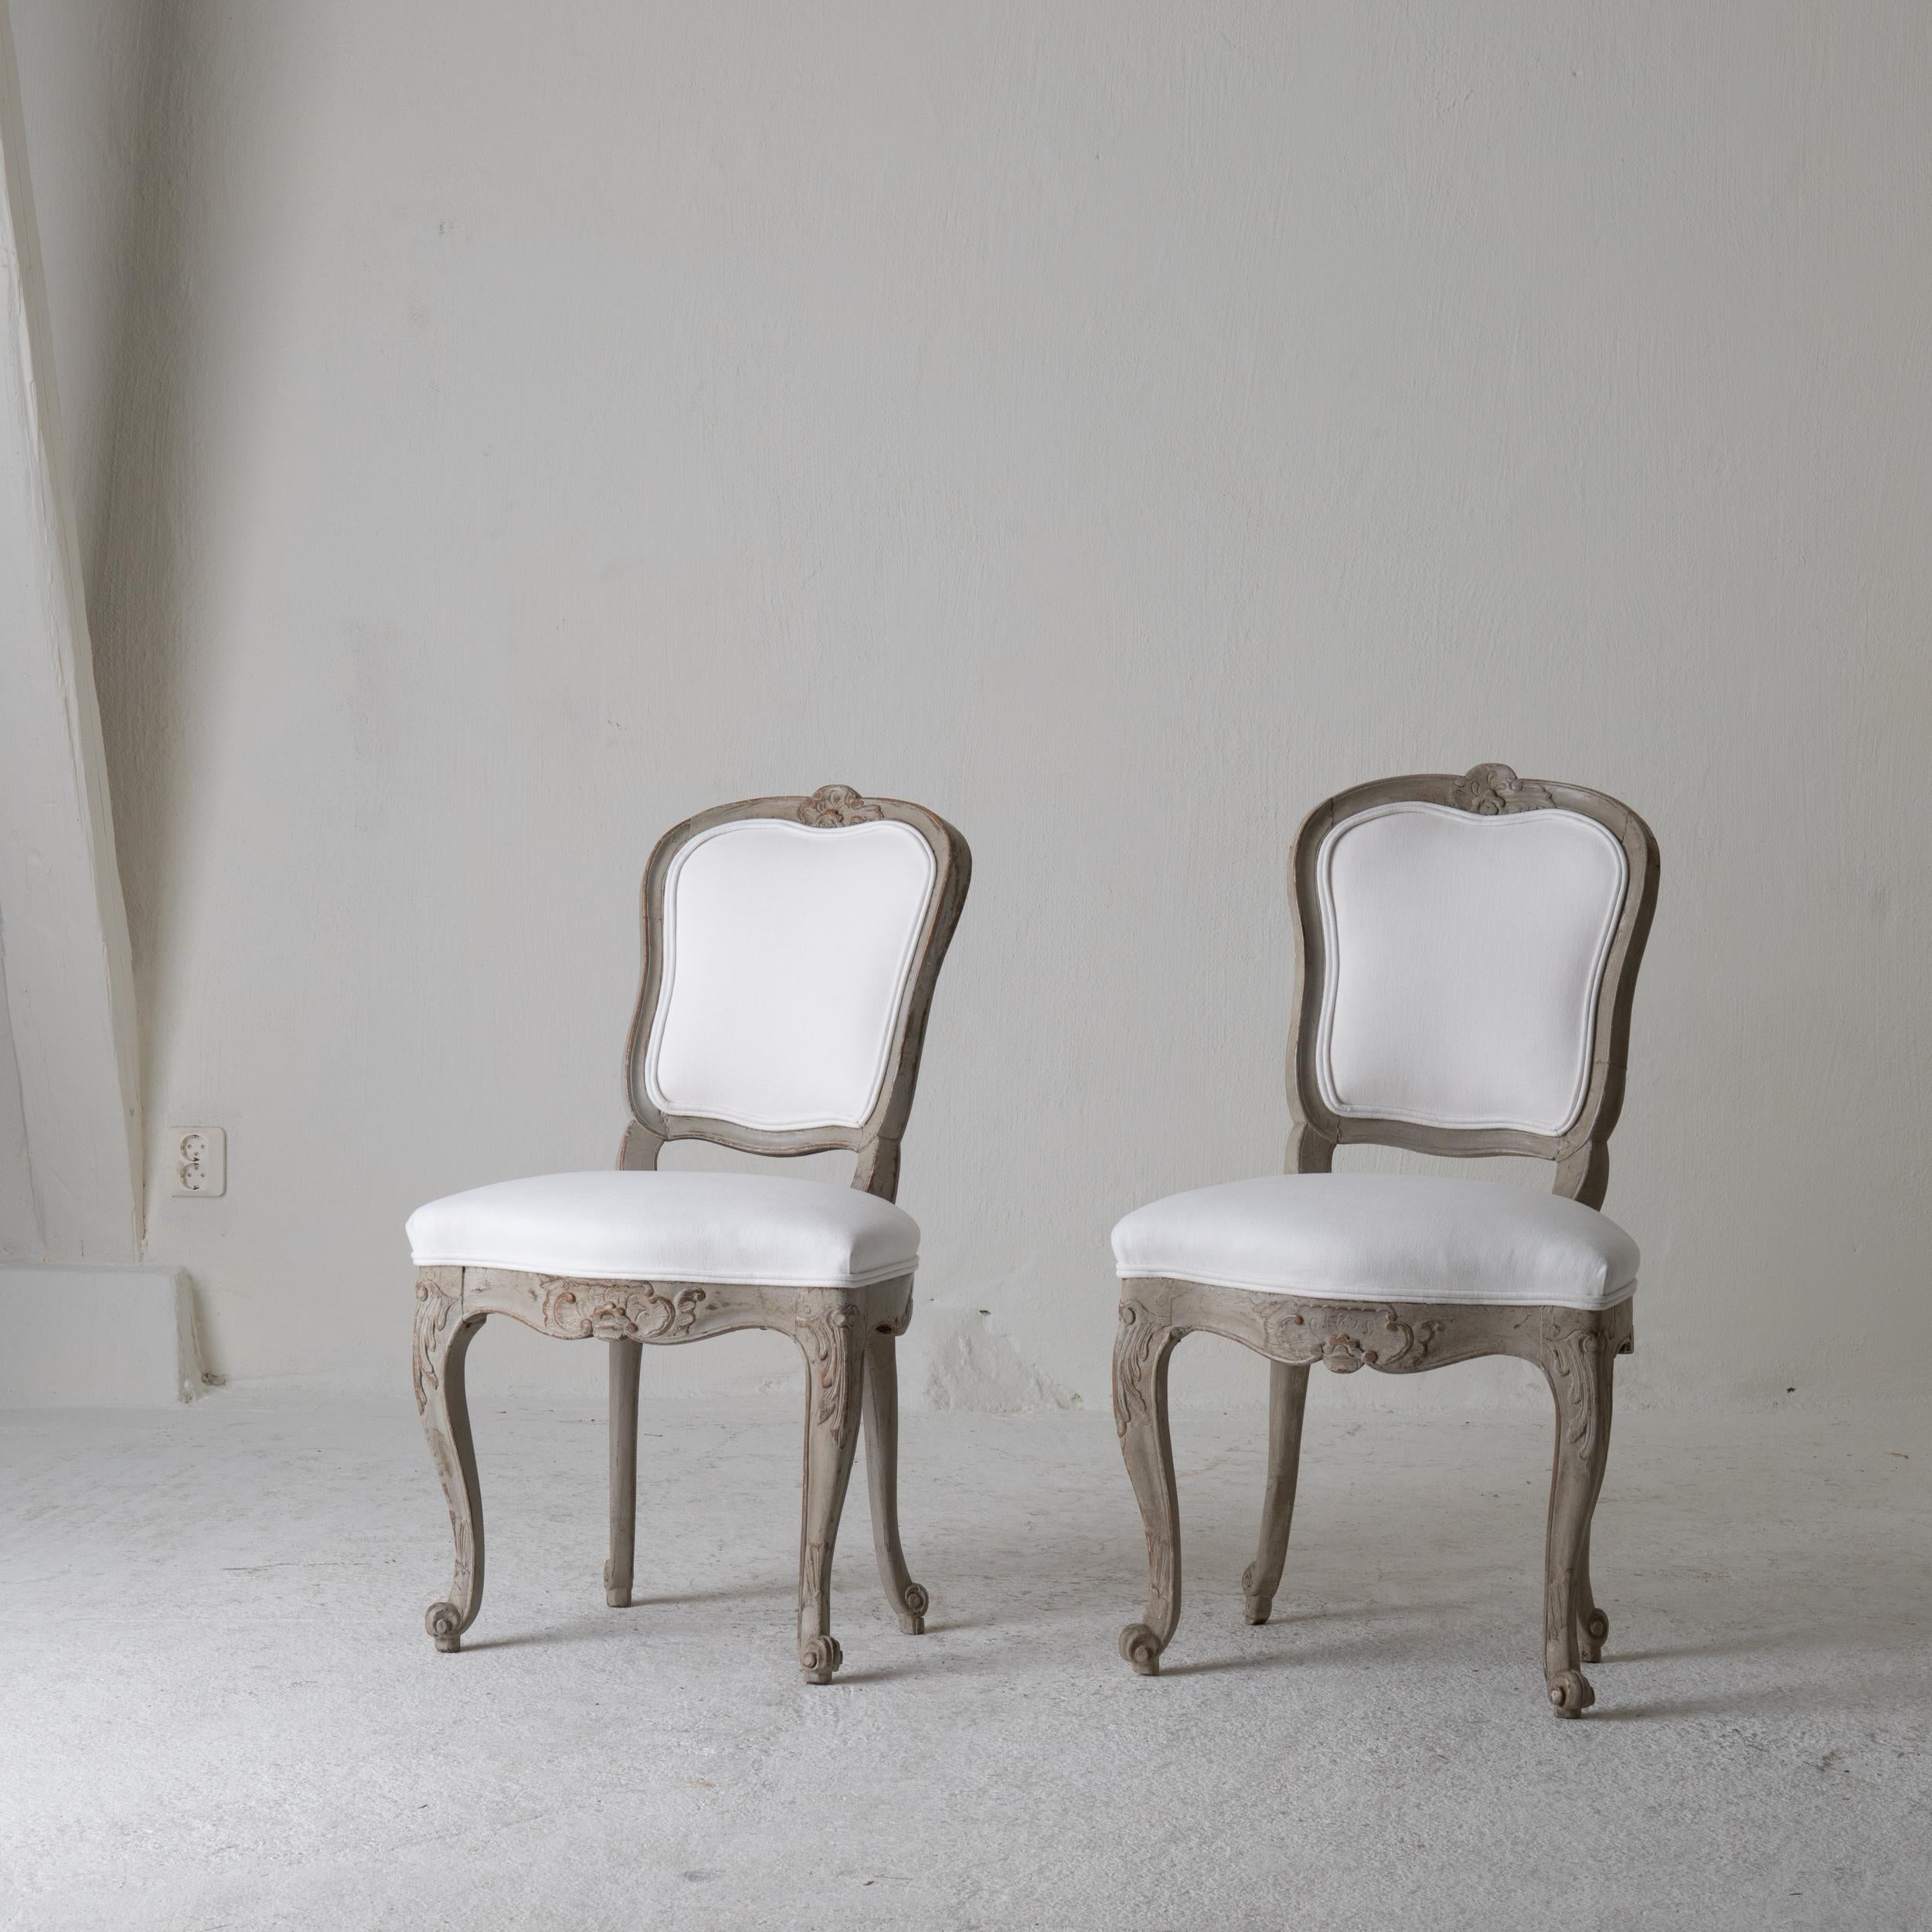 Stühle Paar schwedische Rokoko 1750-1775 weiß grün grau, Schweden. Ein Paar Beistellstühle aus der Zeit des Rokoko (1750-1775) in Schweden. Er ist grünlich-grau gestrichen und mit einem weichen weißen Baumwollstoff gepolstert. Geschnitzte Details